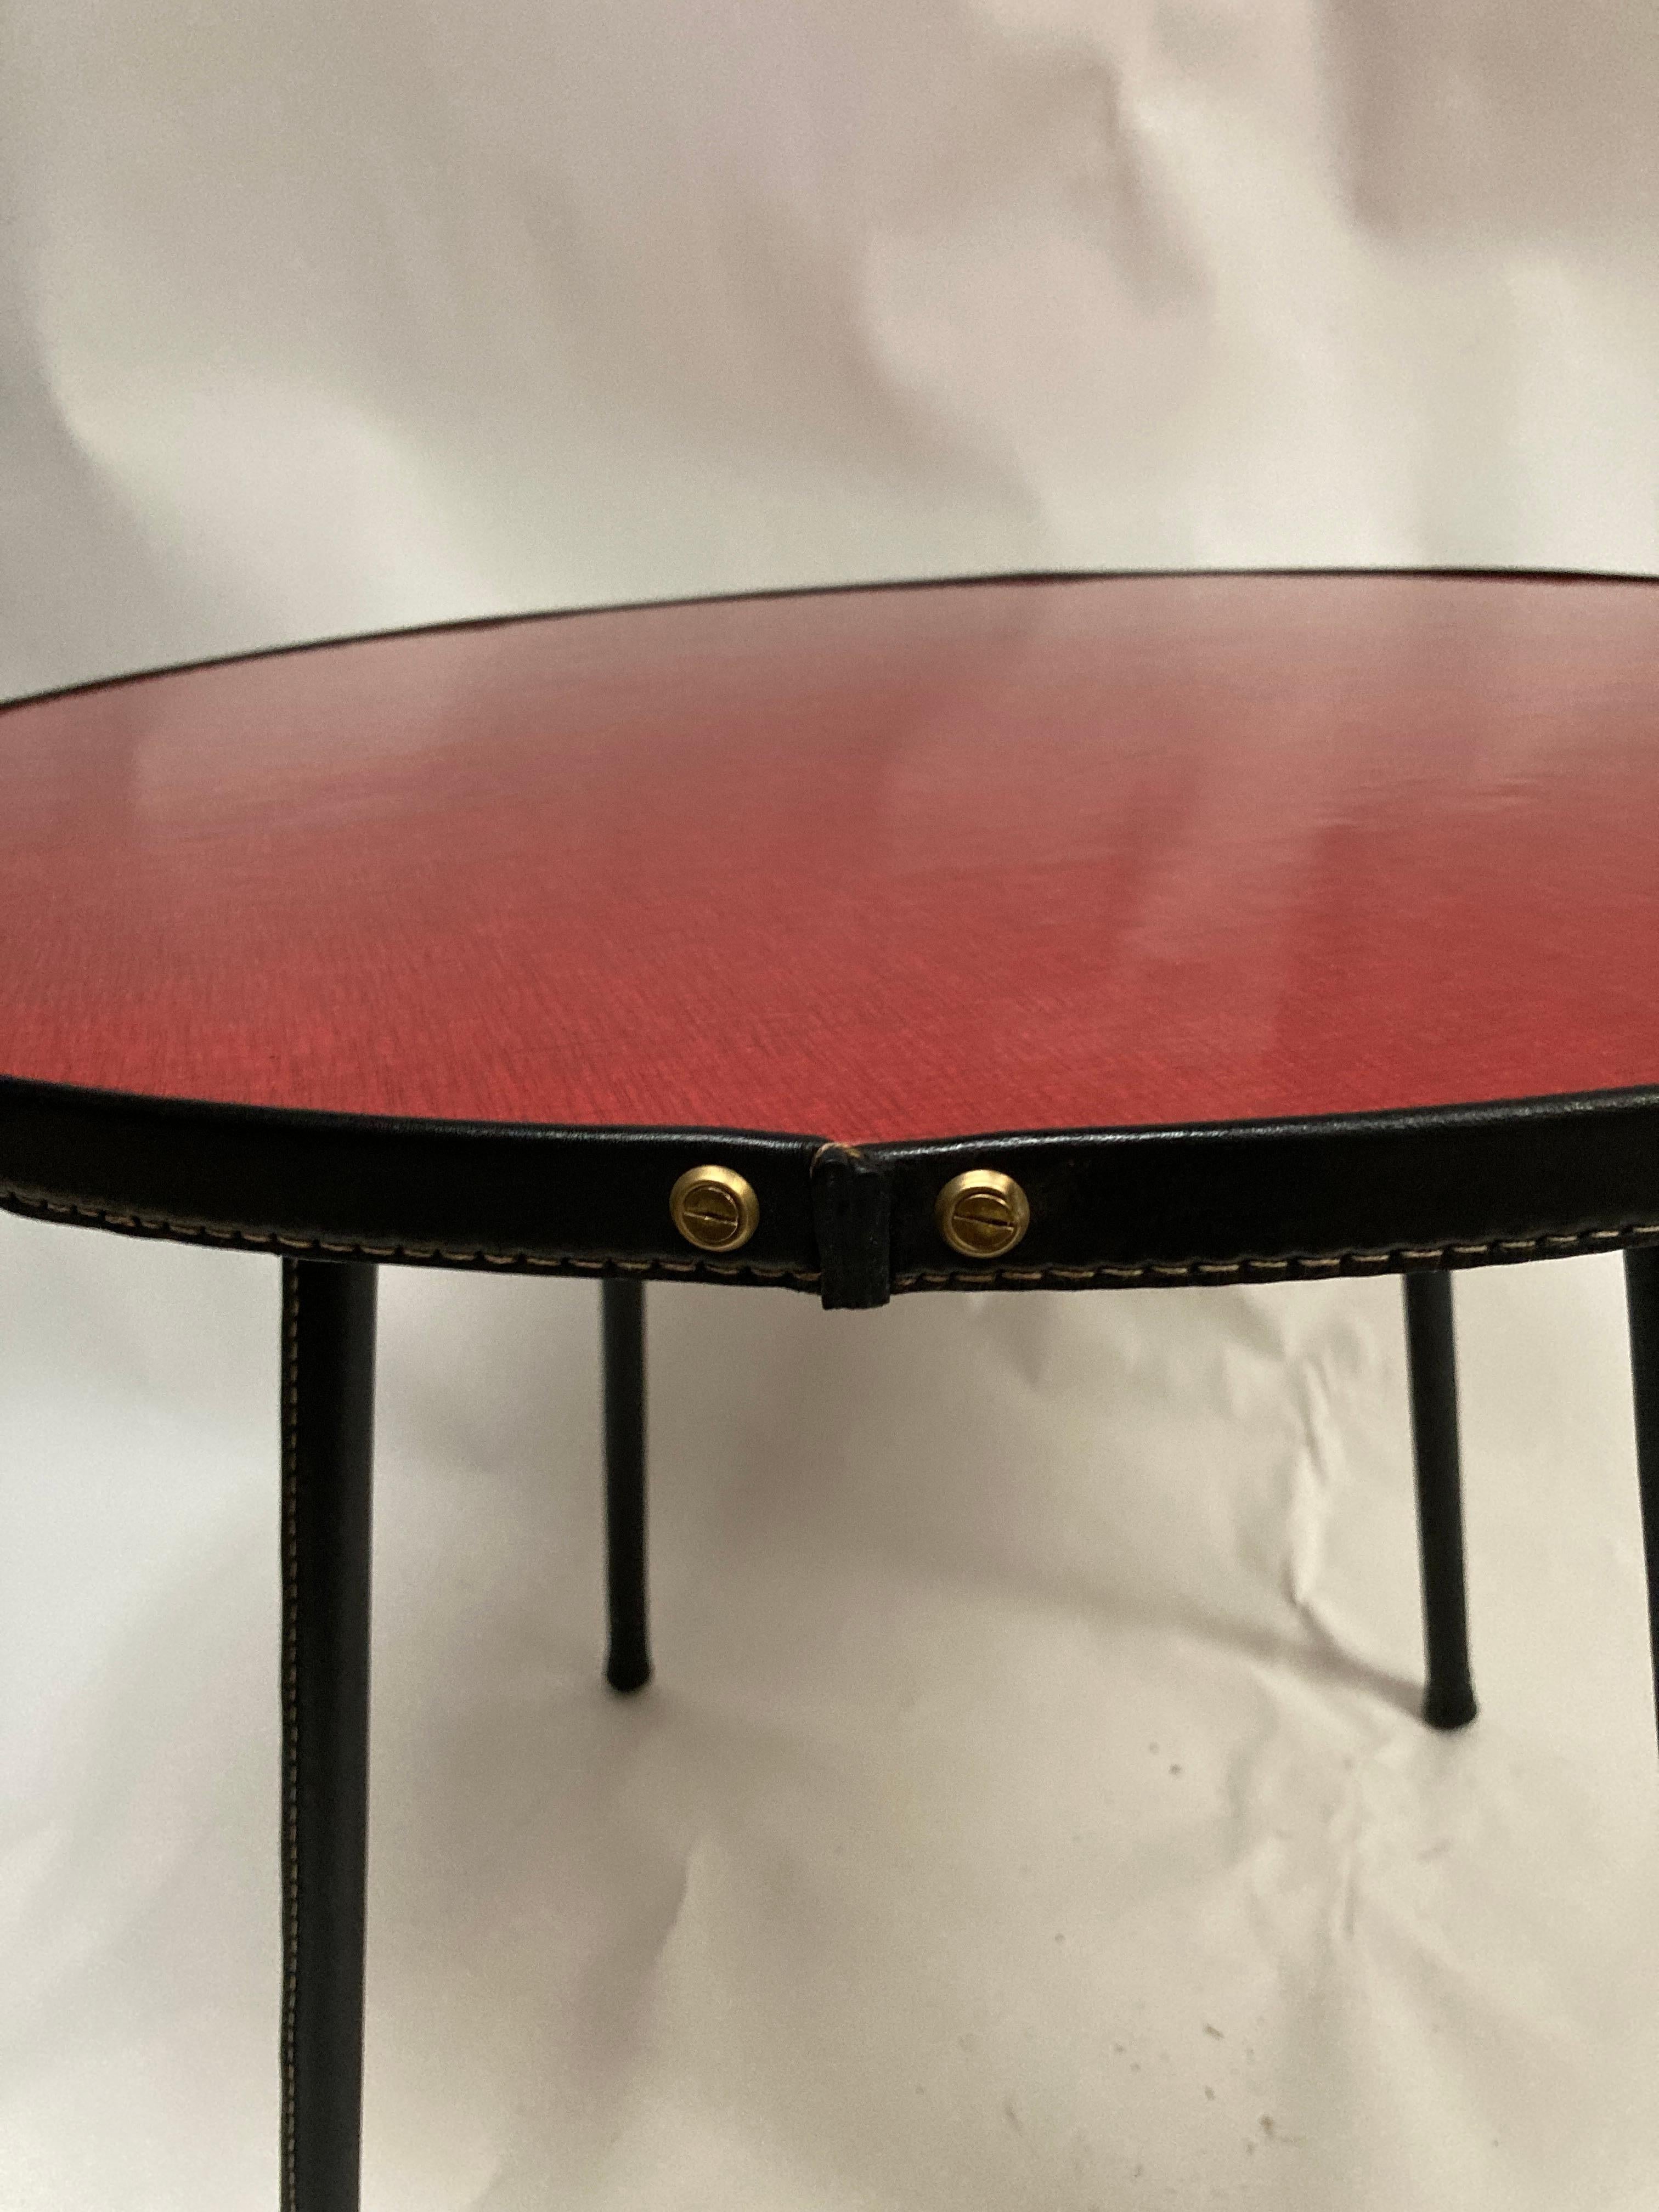 Très belle table en cuir cousu avec plateau en formica rouge
Pieds en cuir noir 
PAR Jacques Adnet
France
